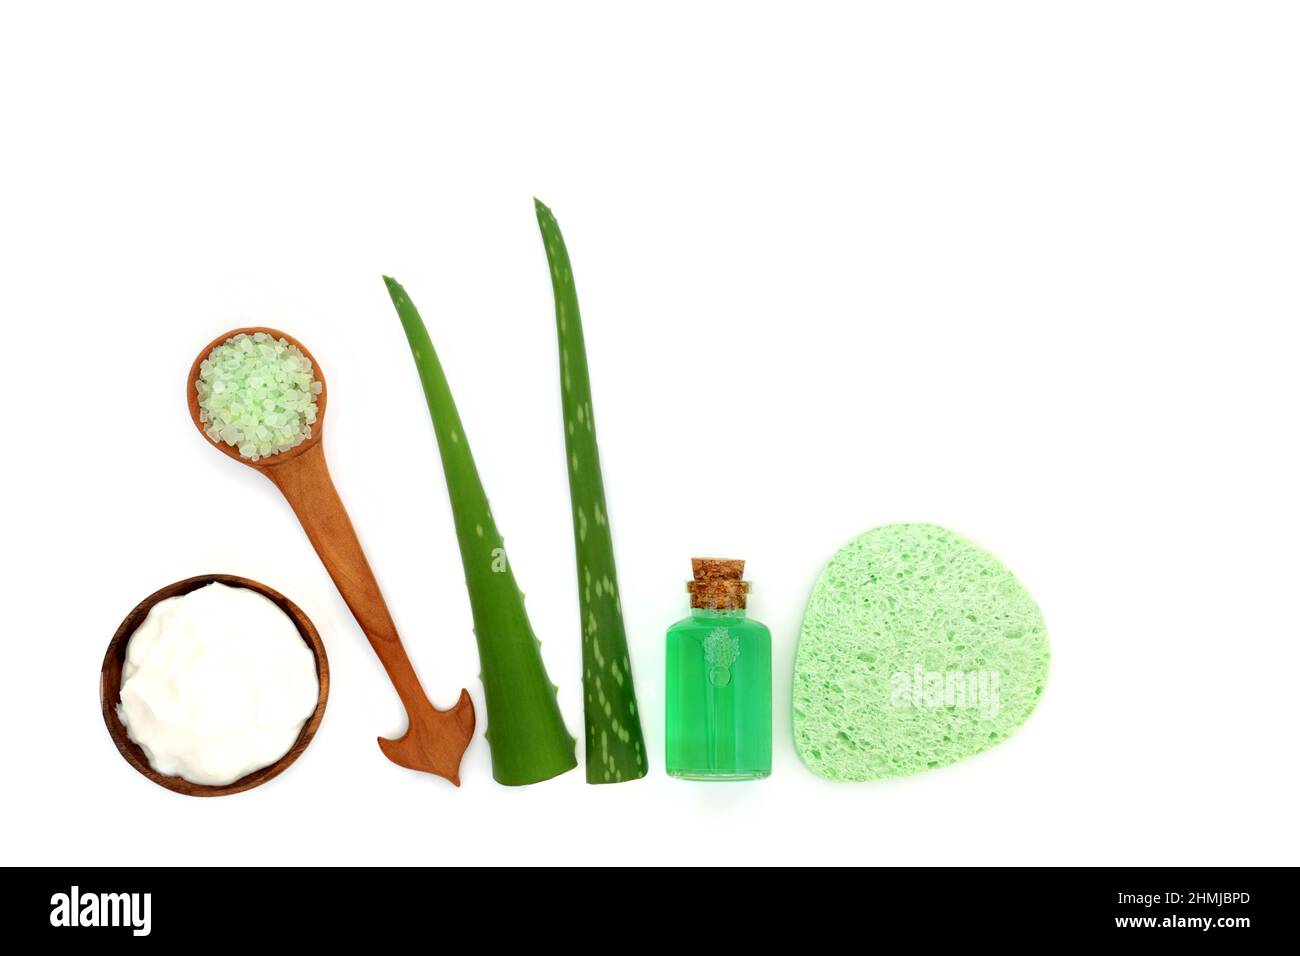 Aloe Vera Feuchtigkeitscreme, Peelingsalz, Gel, grüne Blattzweigen und Kosmetikschwamm auf weißem Hintergrund. Natürliche Hautpflegeprodukte auf pflanzlicher Basis. Stockfoto